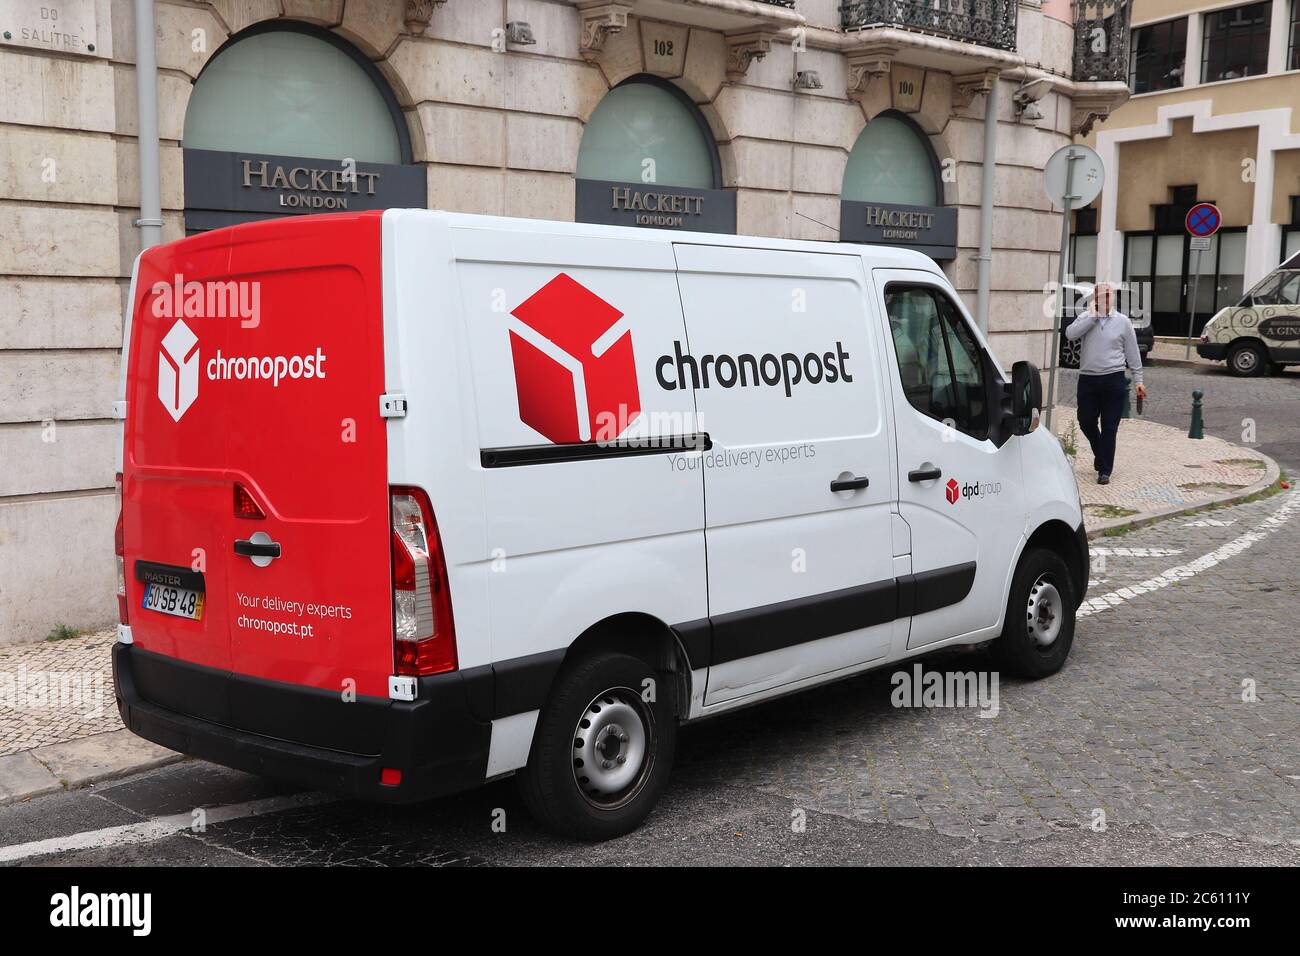 LISBOA, PORTUGAL - 6 DE JUNIO de 2018: Chronopost van de entrega en Lisboa,  Portugal. Chronopost es parte de la compañía postal del grupo DPD  Fotografía de stock - Alamy